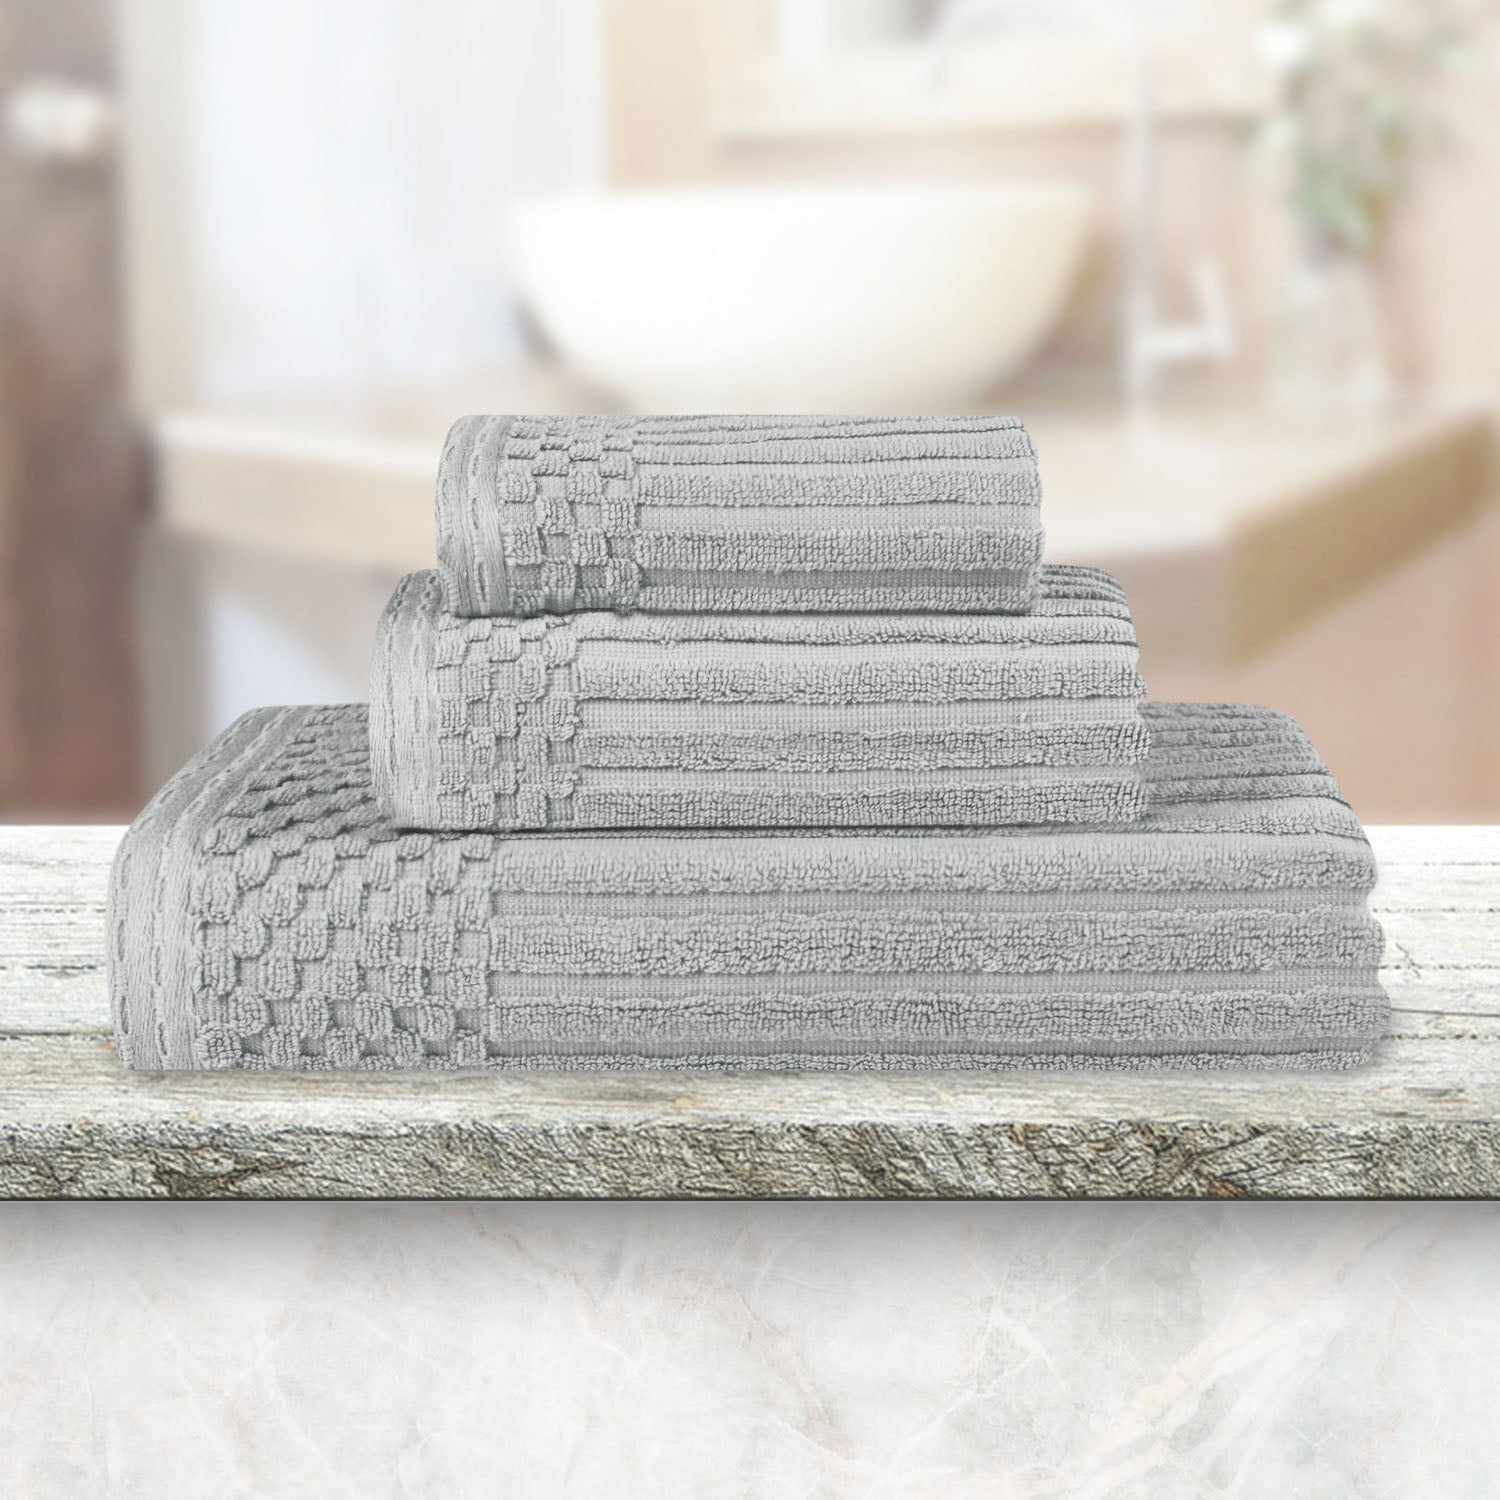 Soho Cotton Ribbed Checkered Border 3 Piece Towel Set - Silver